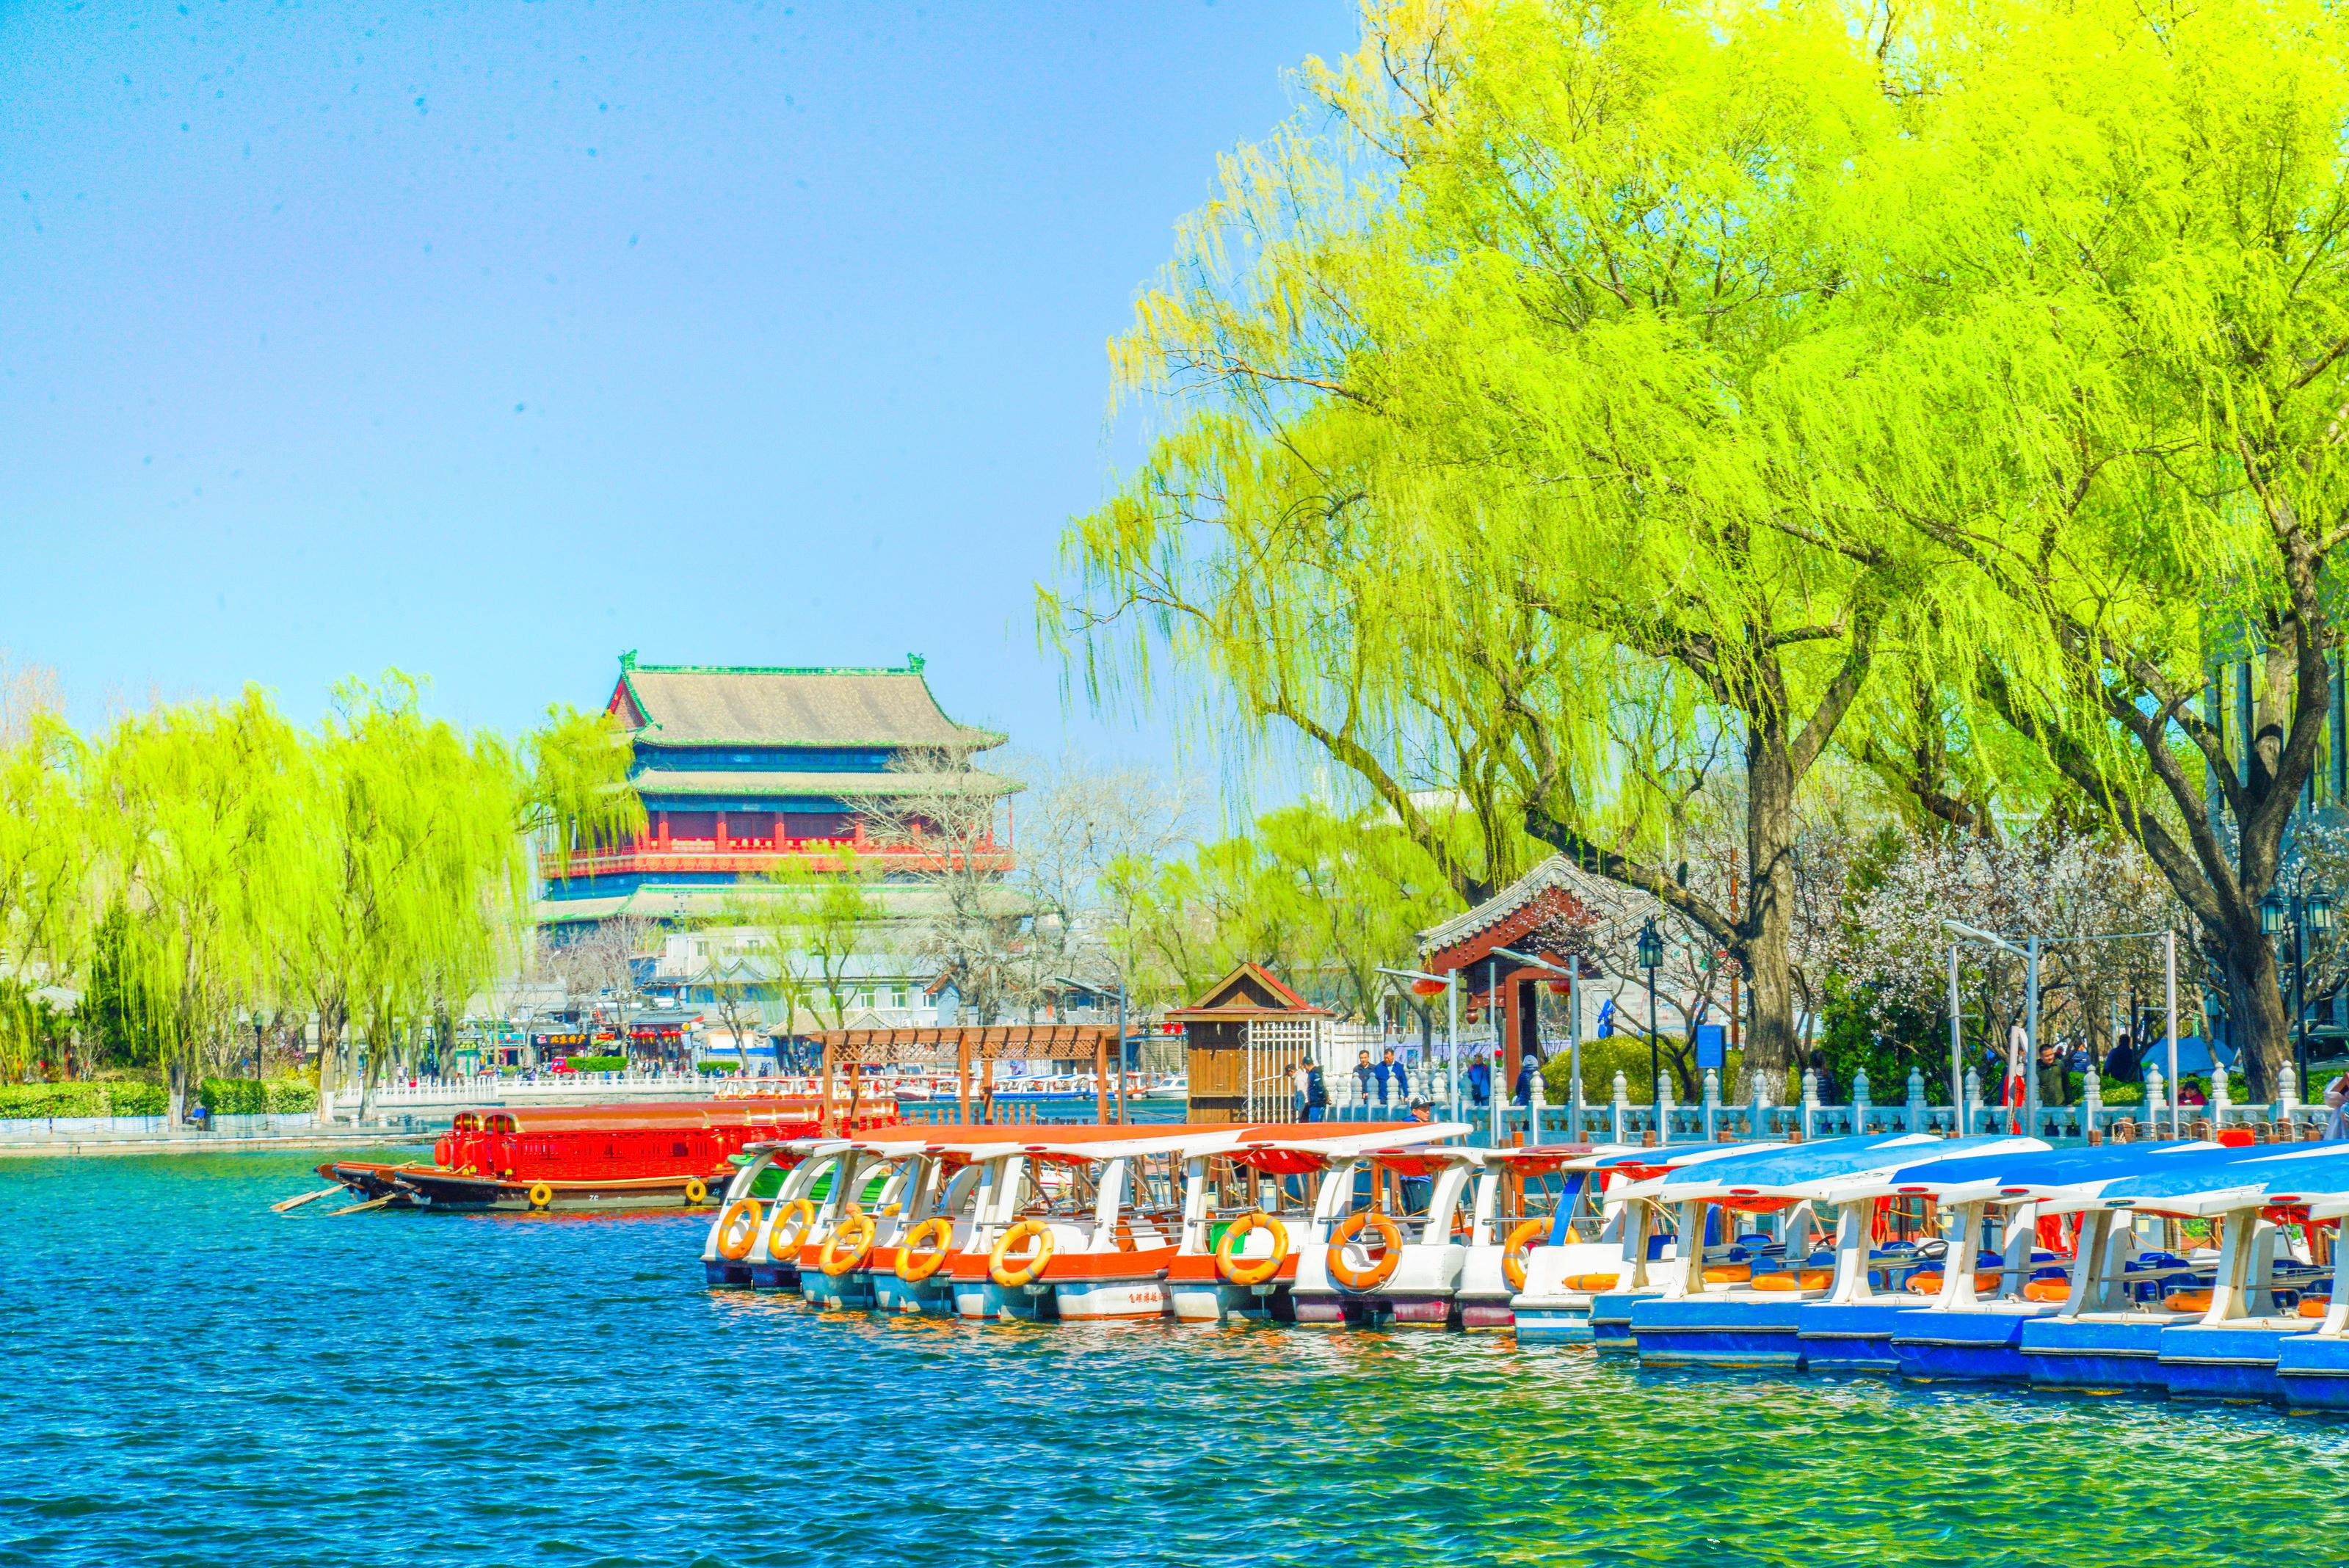 什刹海风景区 - 北京景点 - 华侨城旅游网